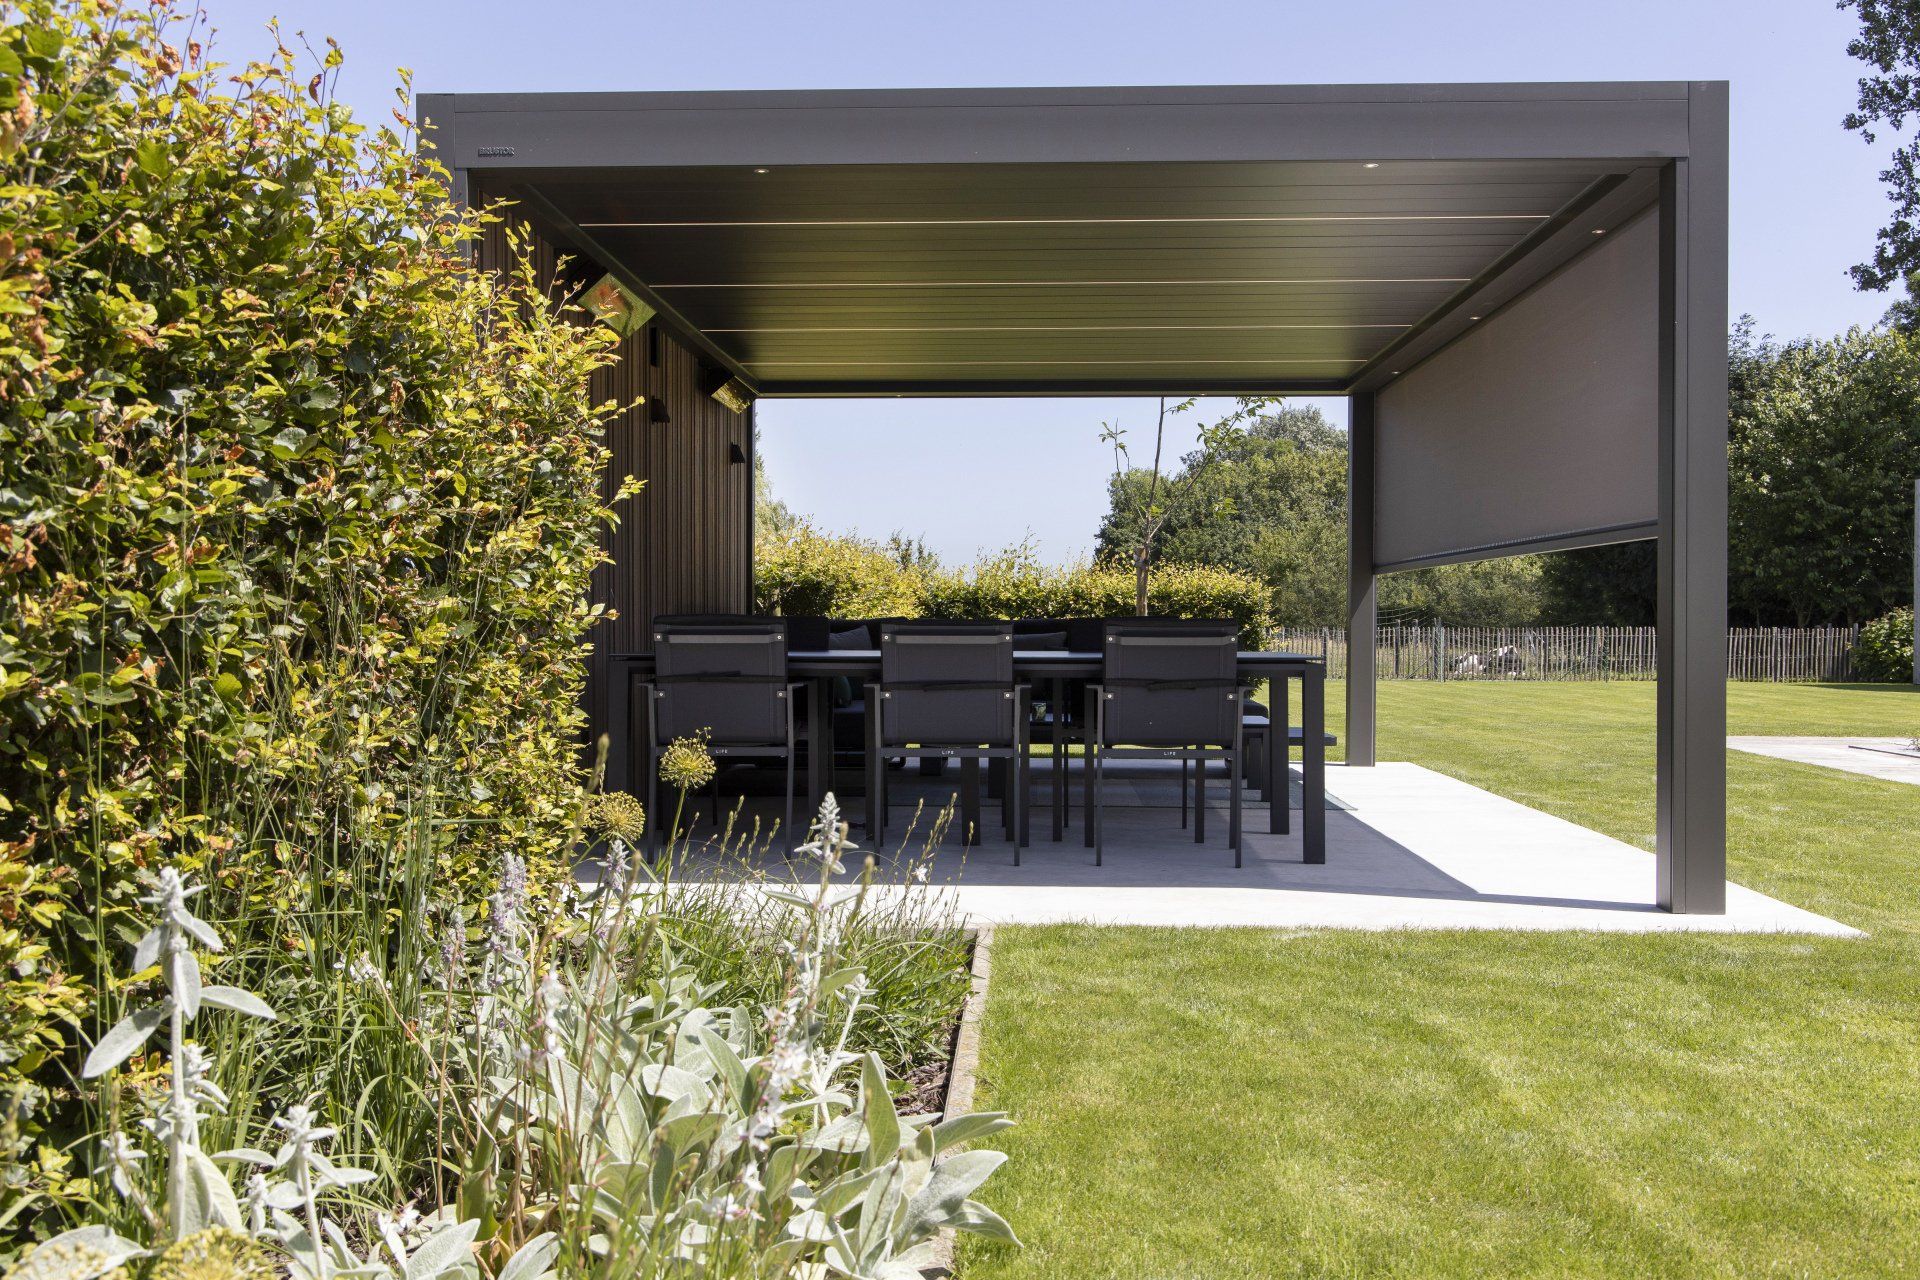 Aluminium-Terrassenüberdachung B250 XL: Pergola mit Lamellendach günstig aus Berlin. Die perfekte Überdachung für Ihre Terrasse, Garten oder die Gastronomie.